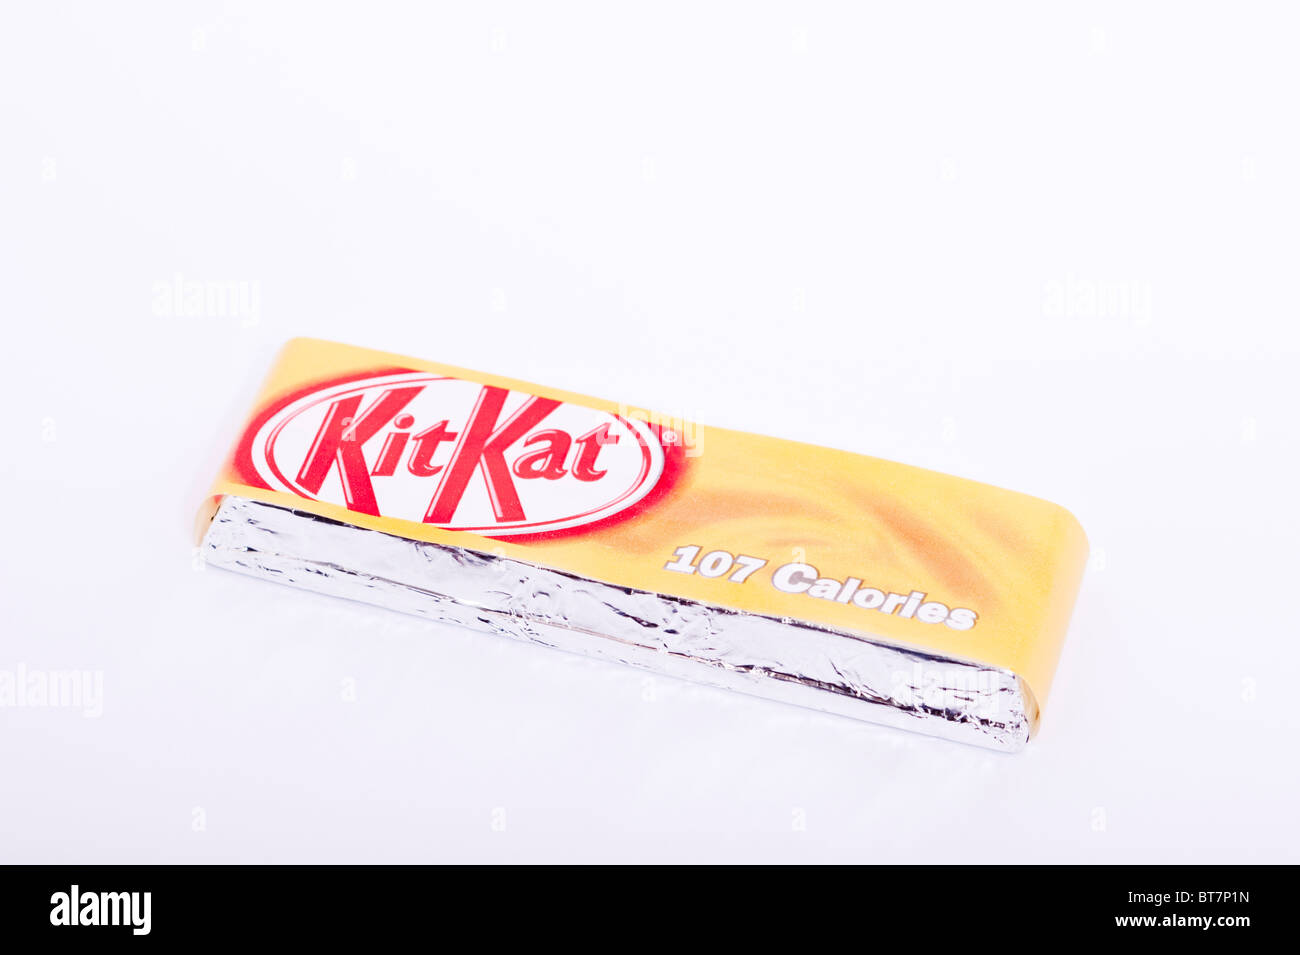 Une photo d'une barre de chocolat KitKat caramel sur un fond blanc. Banque D'Images